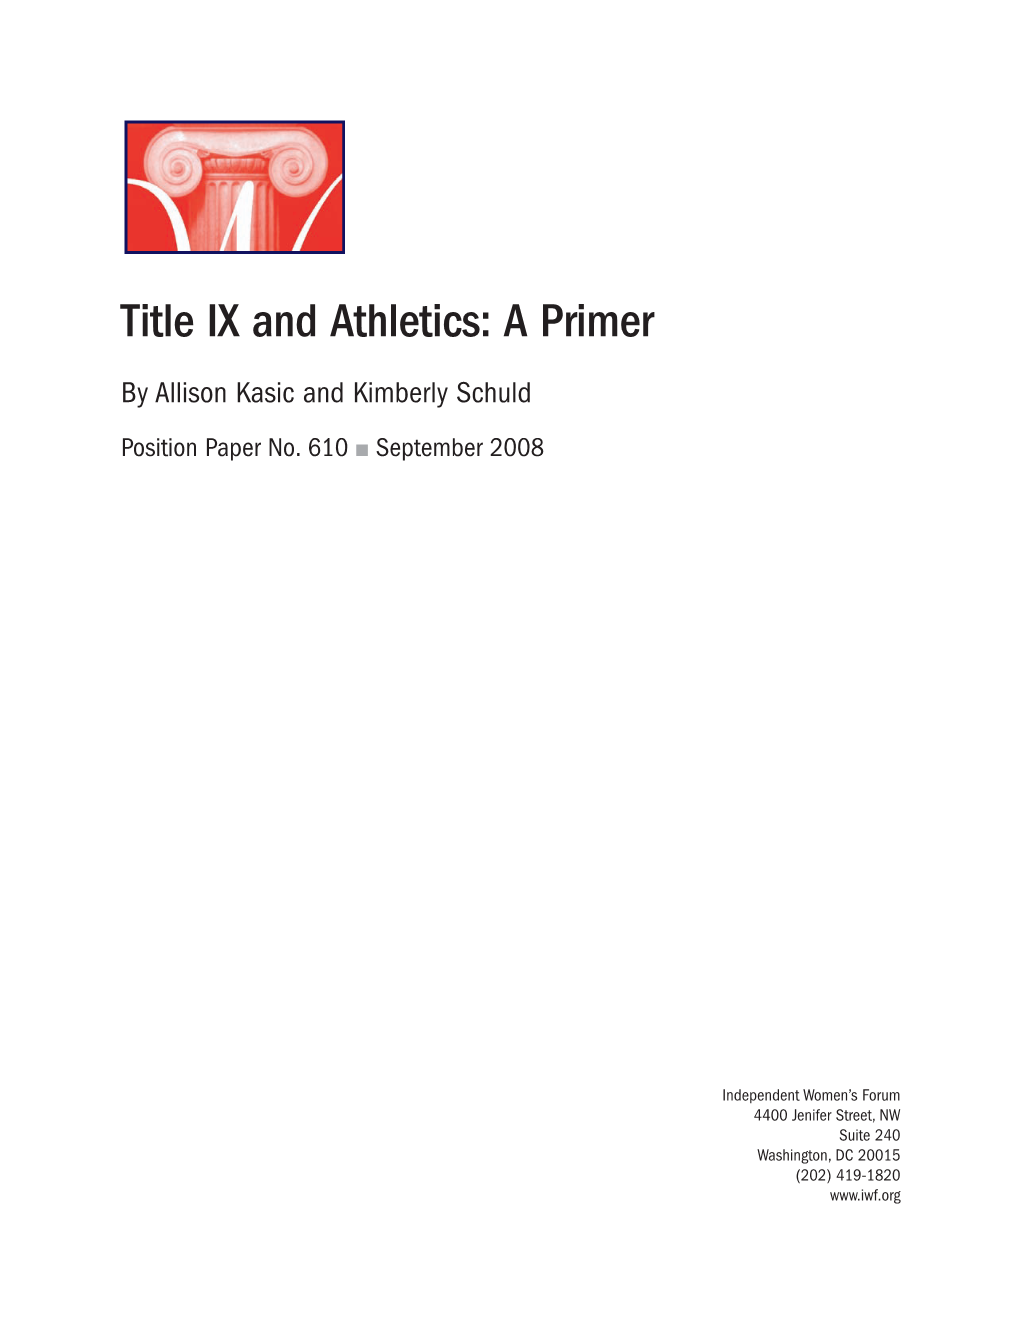 Title IX and Athletics: a Primer